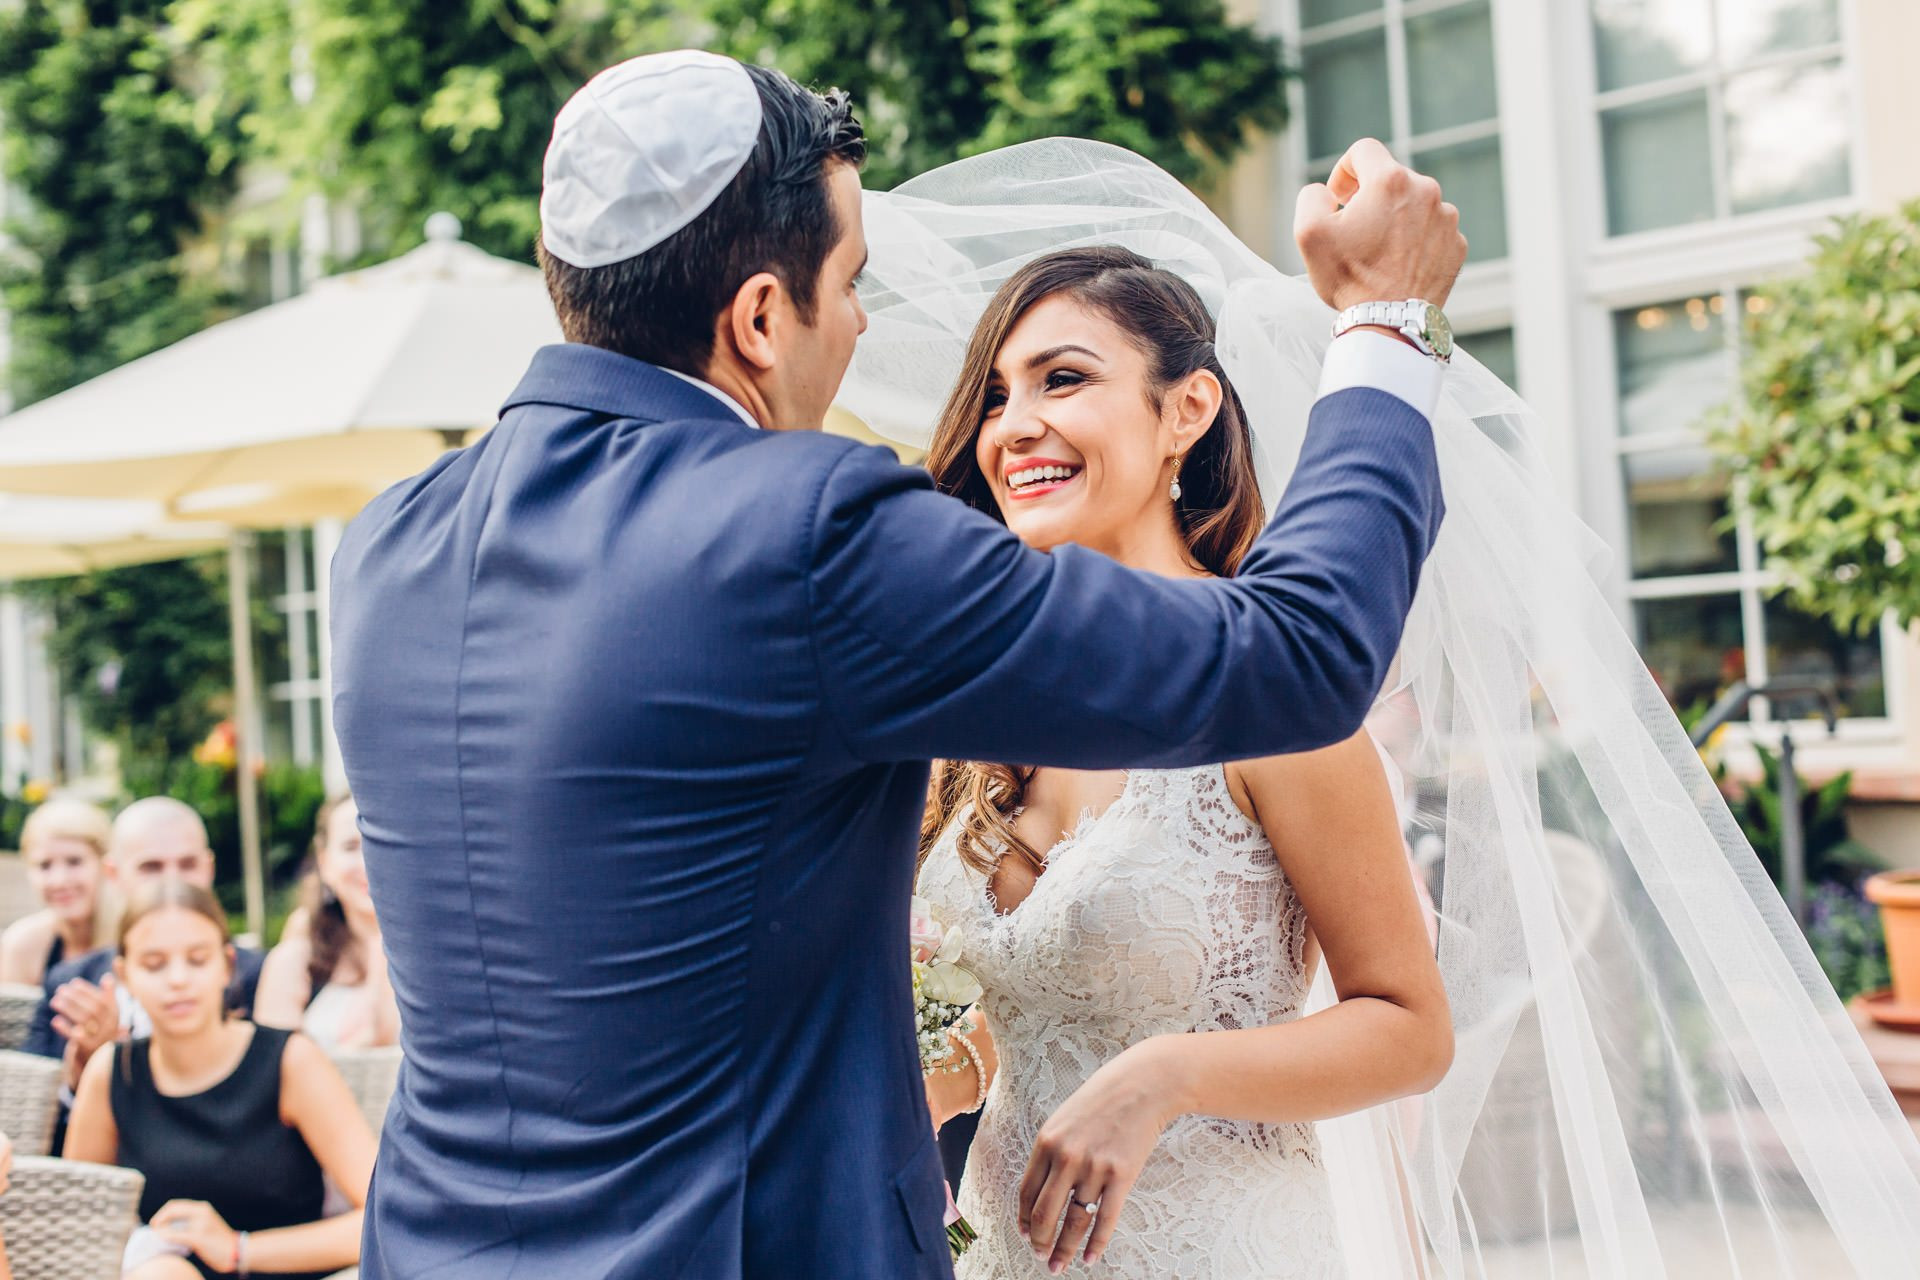 Jüdische Hochzeit
 Jüdische Hochzeit in Bad Homburg – Hochzeitsfotografin